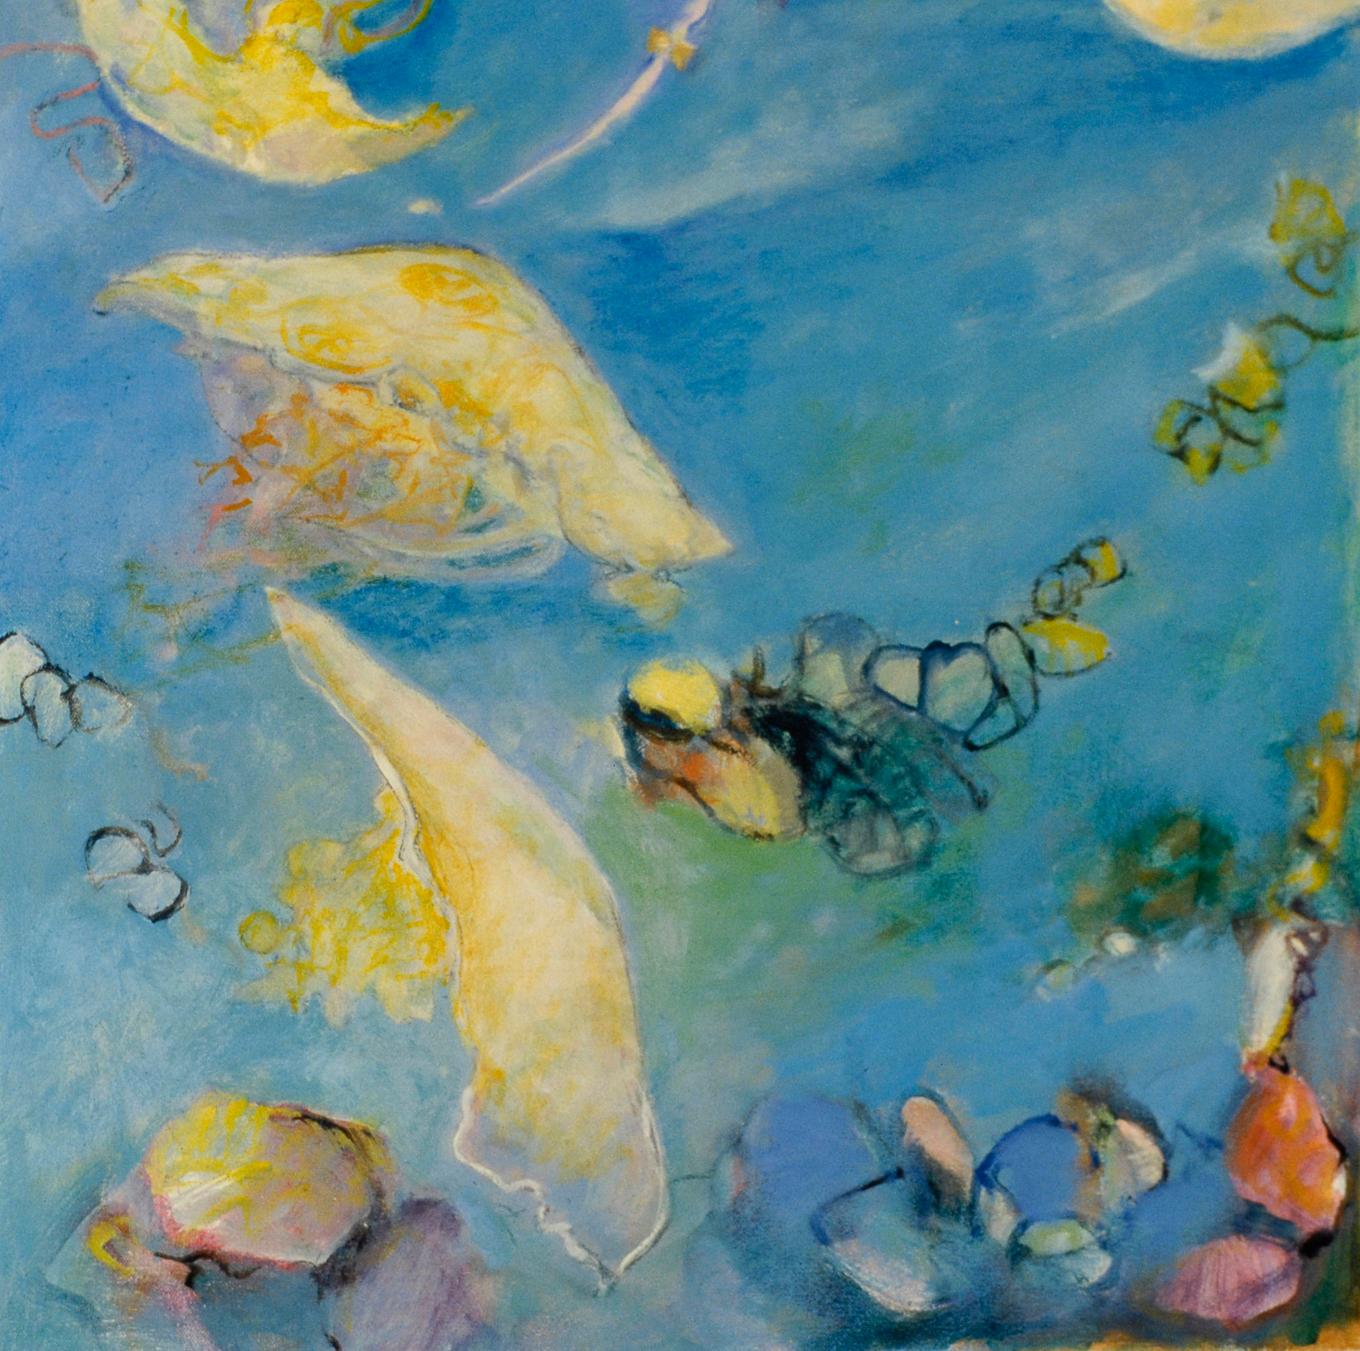 Der Laternenfisch ist Teil der Serie Licht in der Tiefe der Künstlerin Ellen Hart. Lantern Fish erforscht  die allgegenwärtigen Licht-, Schatten- und Reflexionsmuster, die wir alle täglich erleben, für die wir uns aber nur selten interessieren. Die